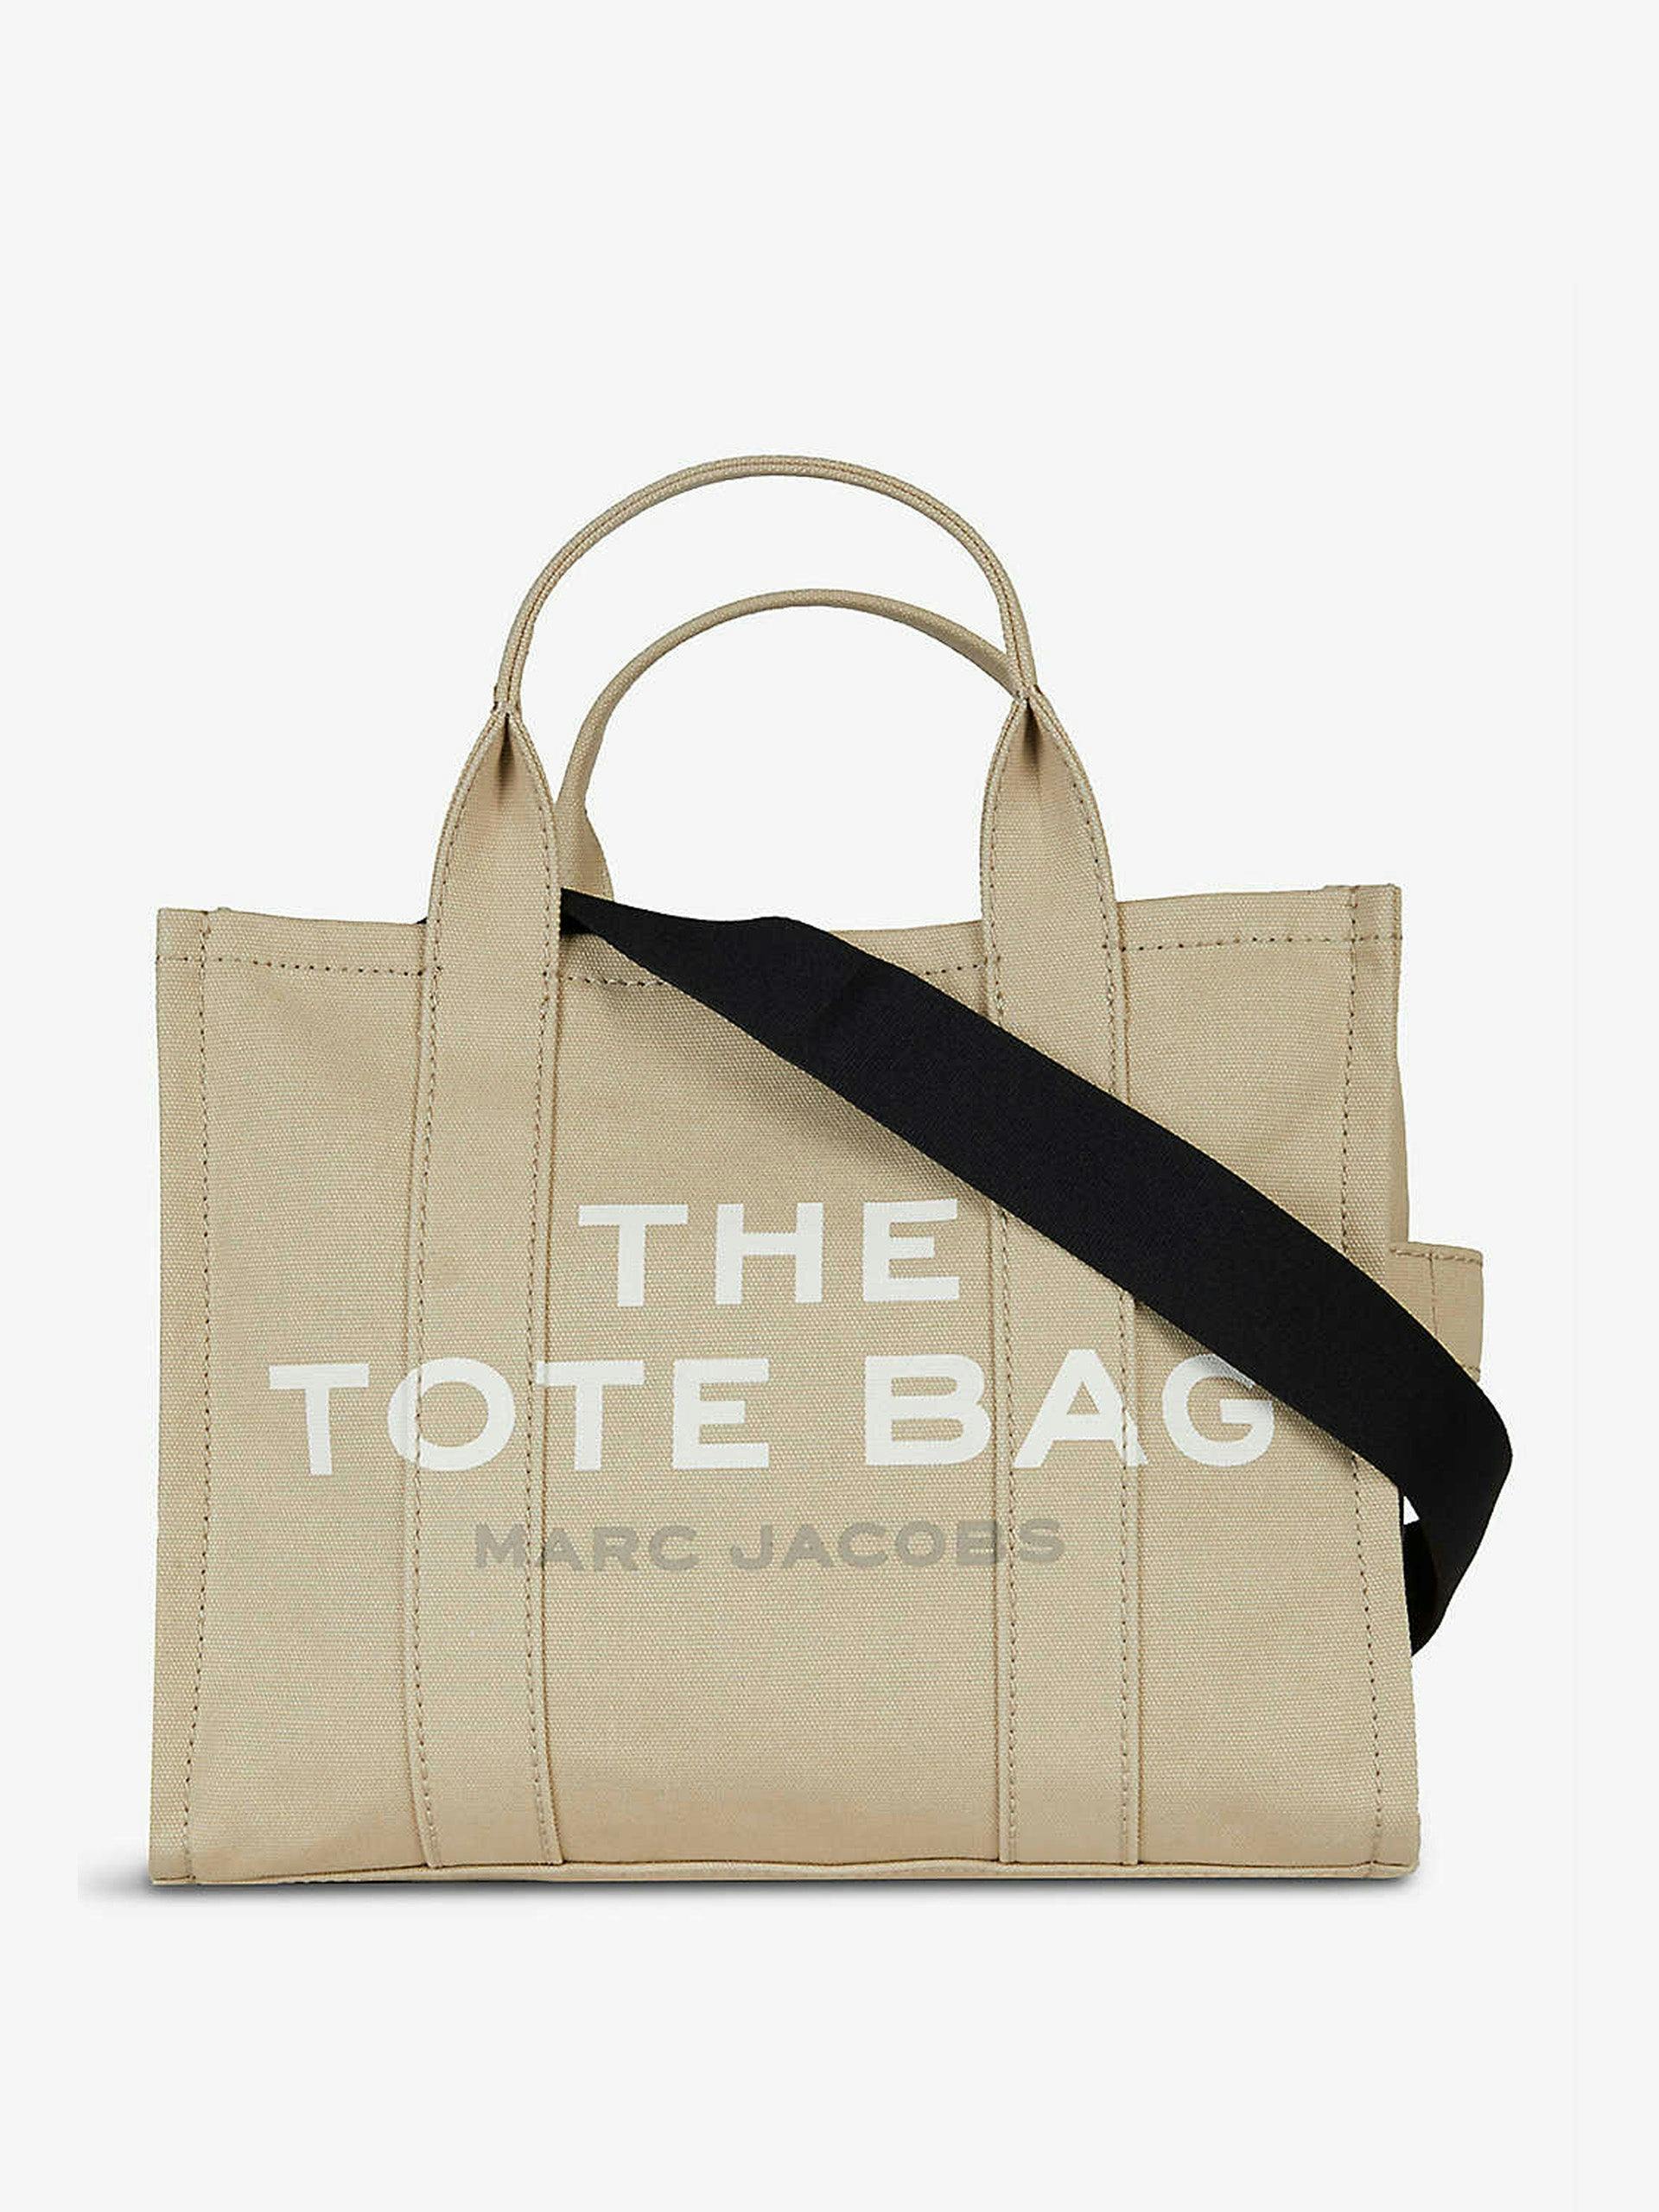 The Tote Bag mini canvas shopper